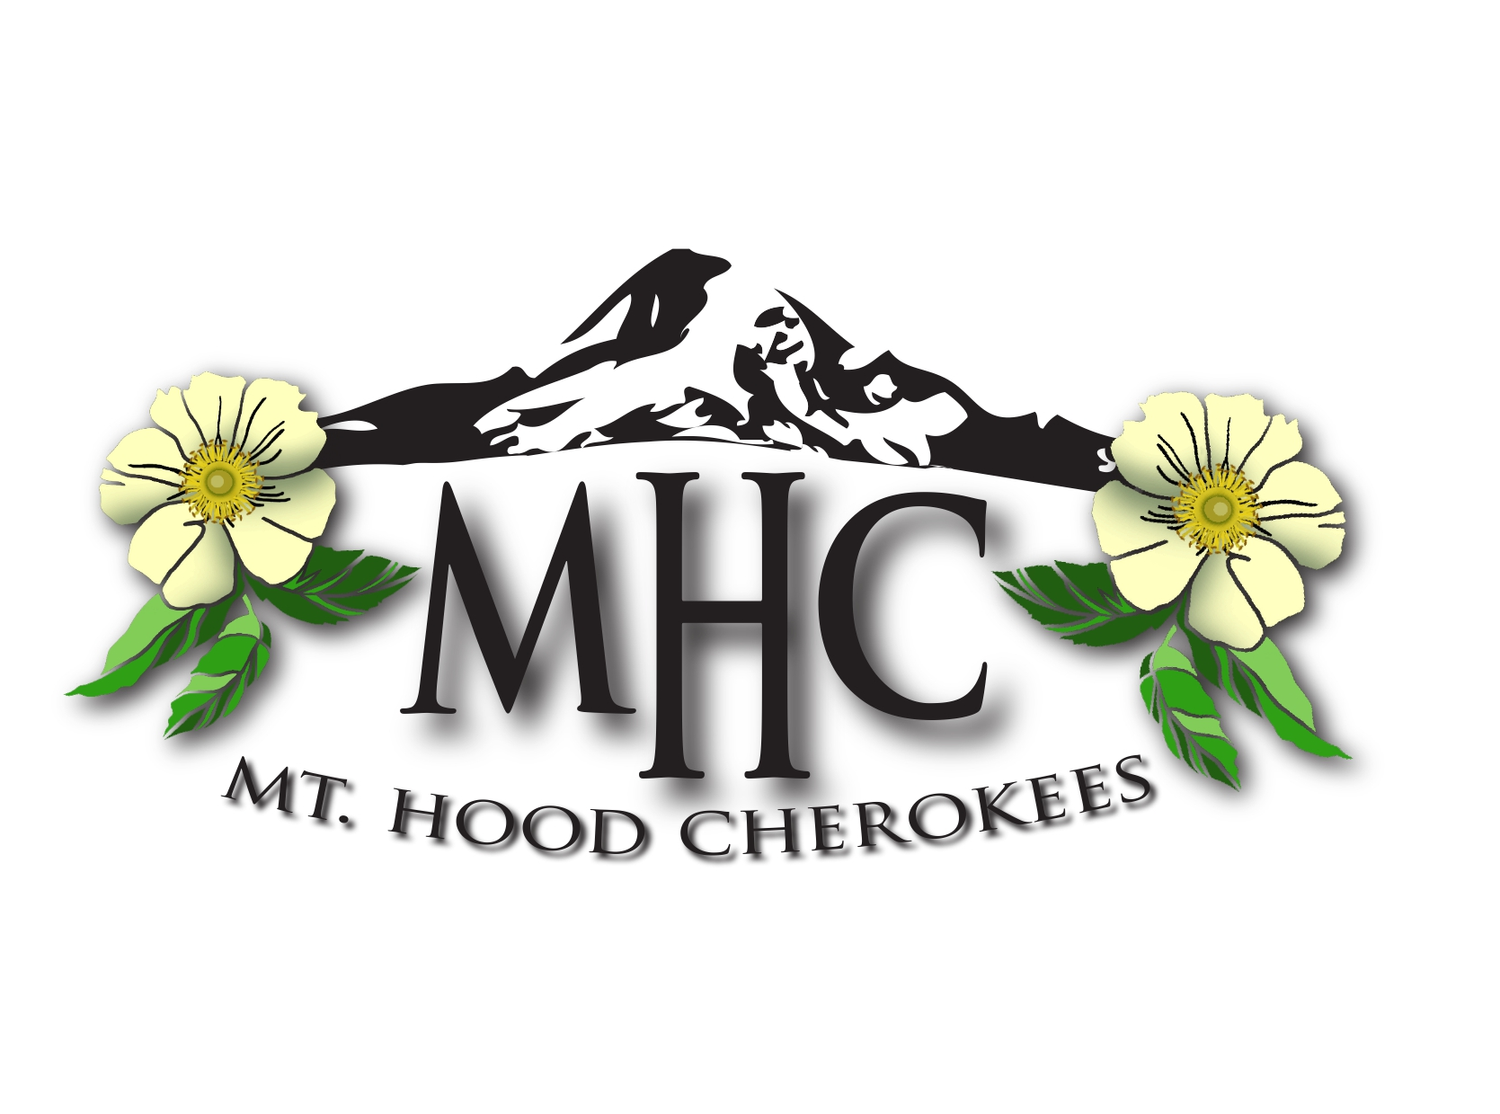 Mt. Hood Cherokees